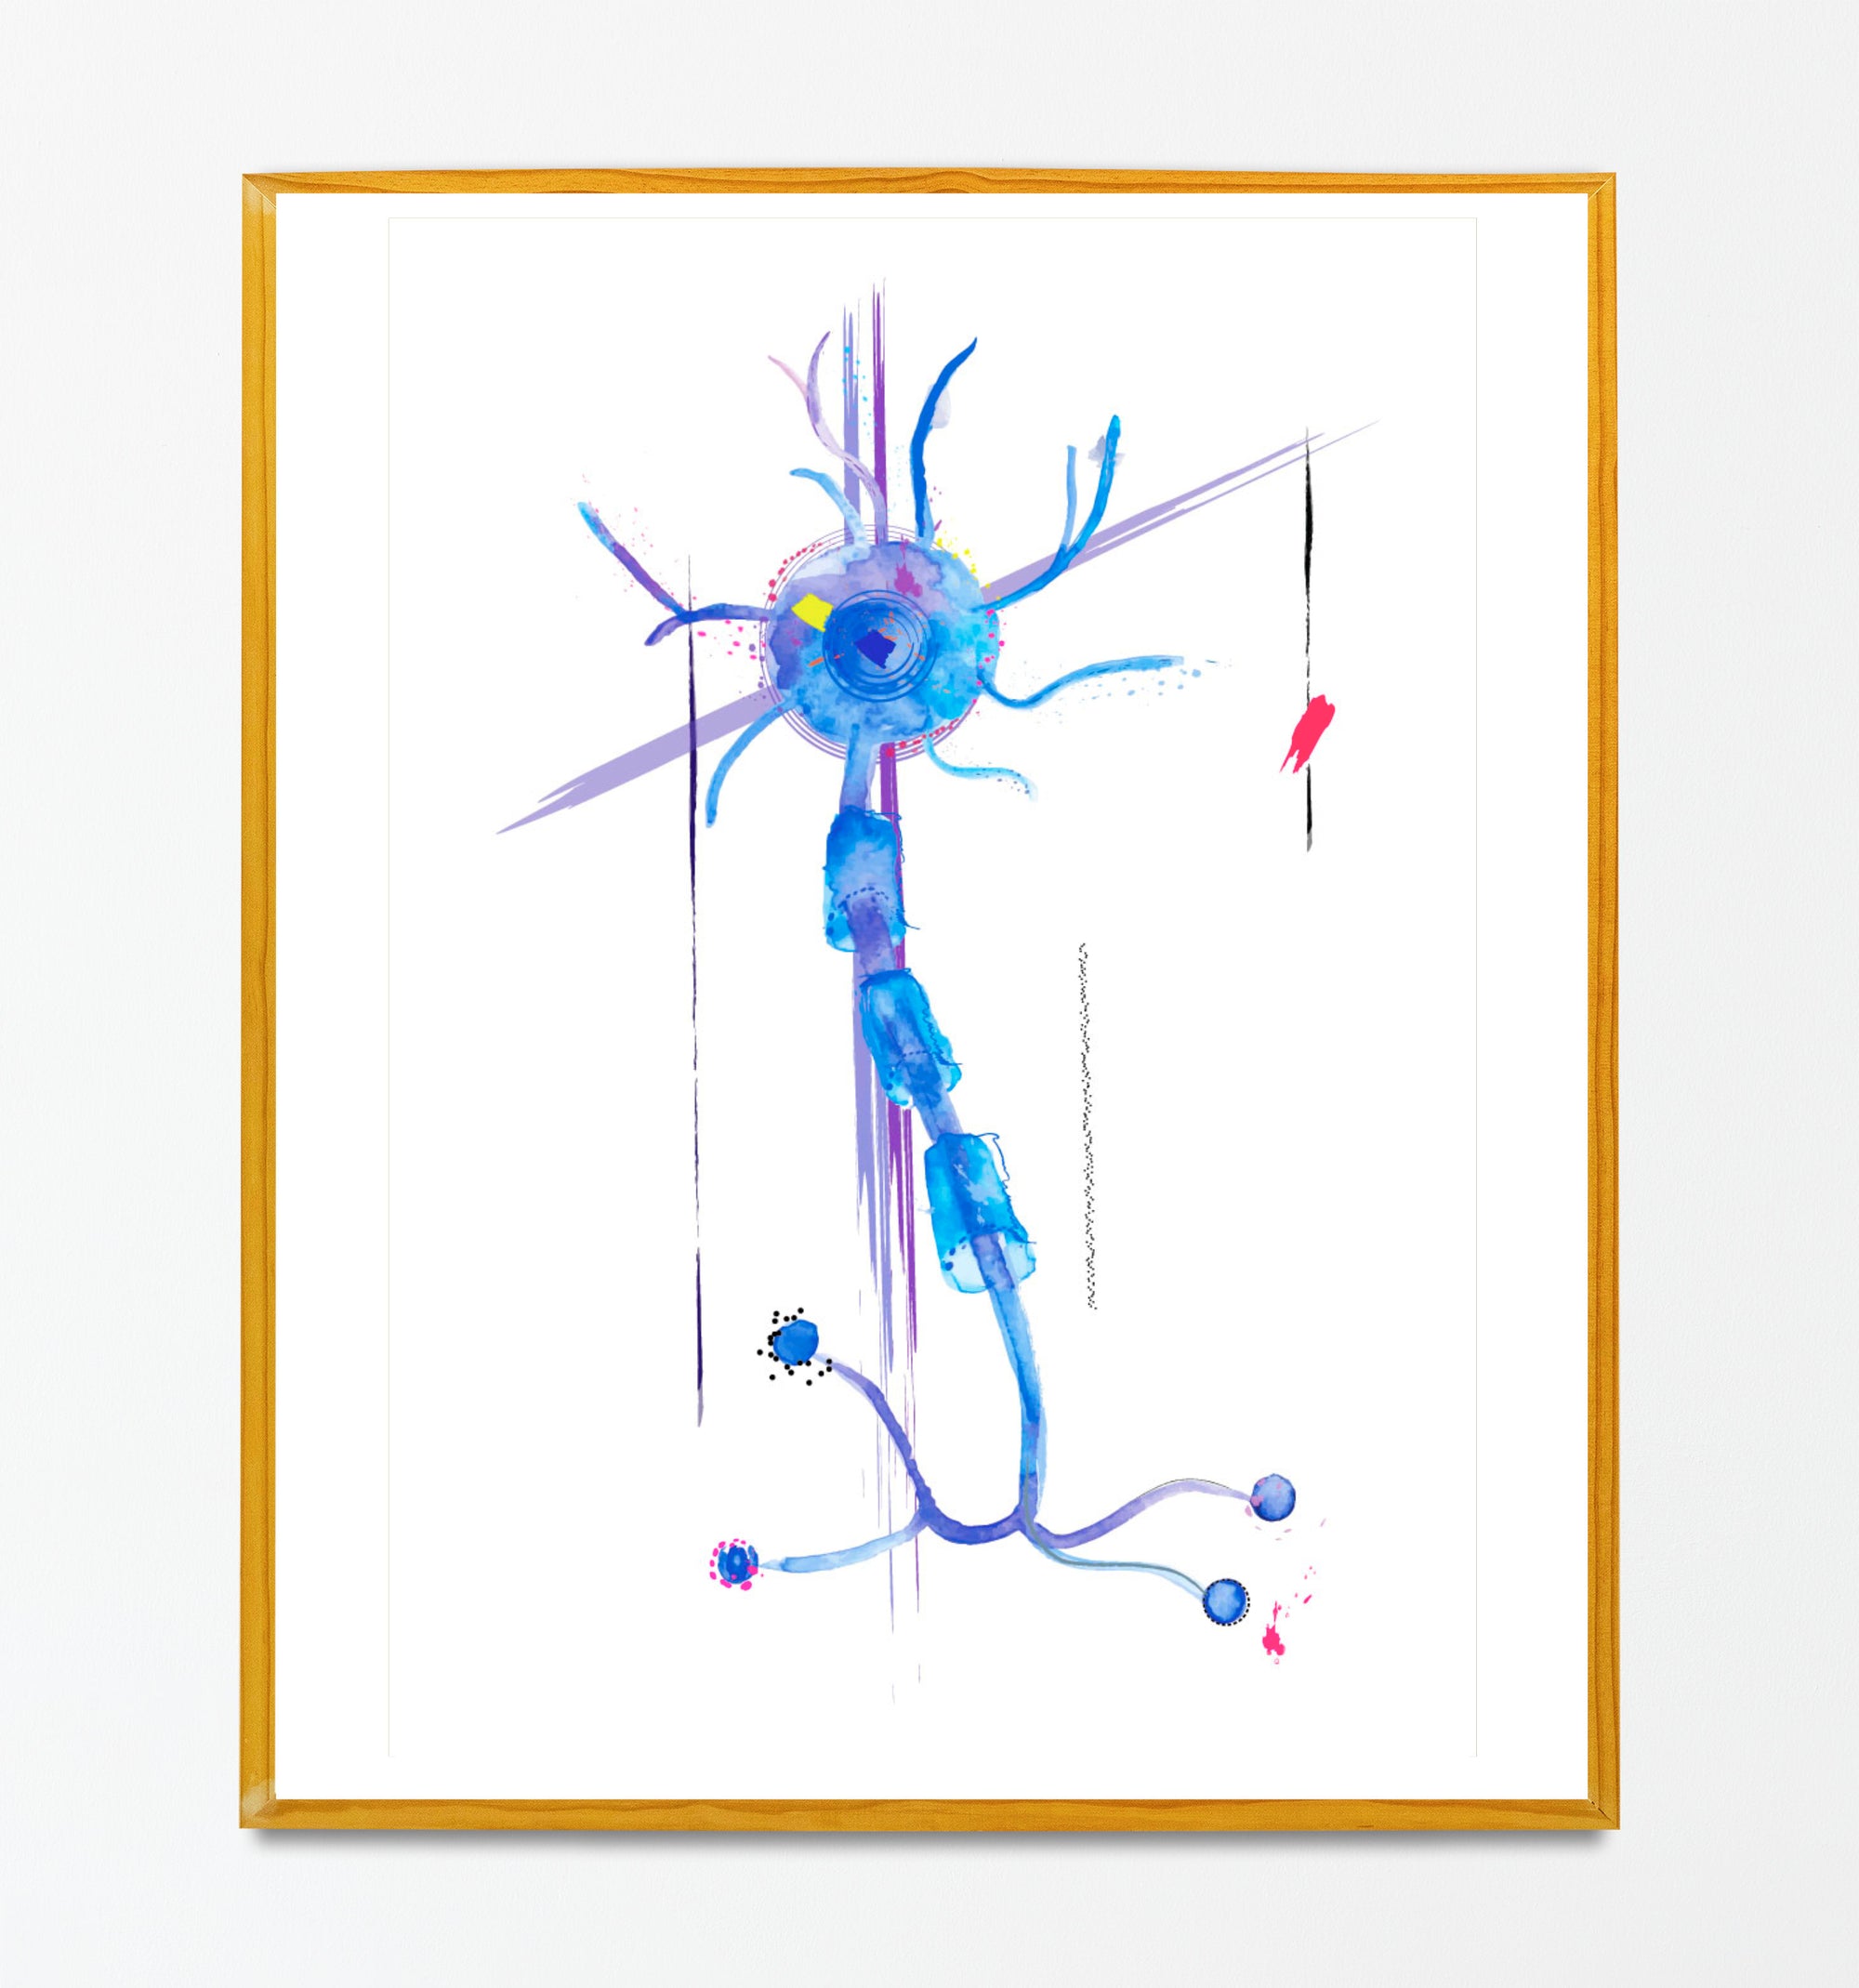 Neuron Abstract Art, Anatomy Art, Neuroscience Art, Neurologist Gift